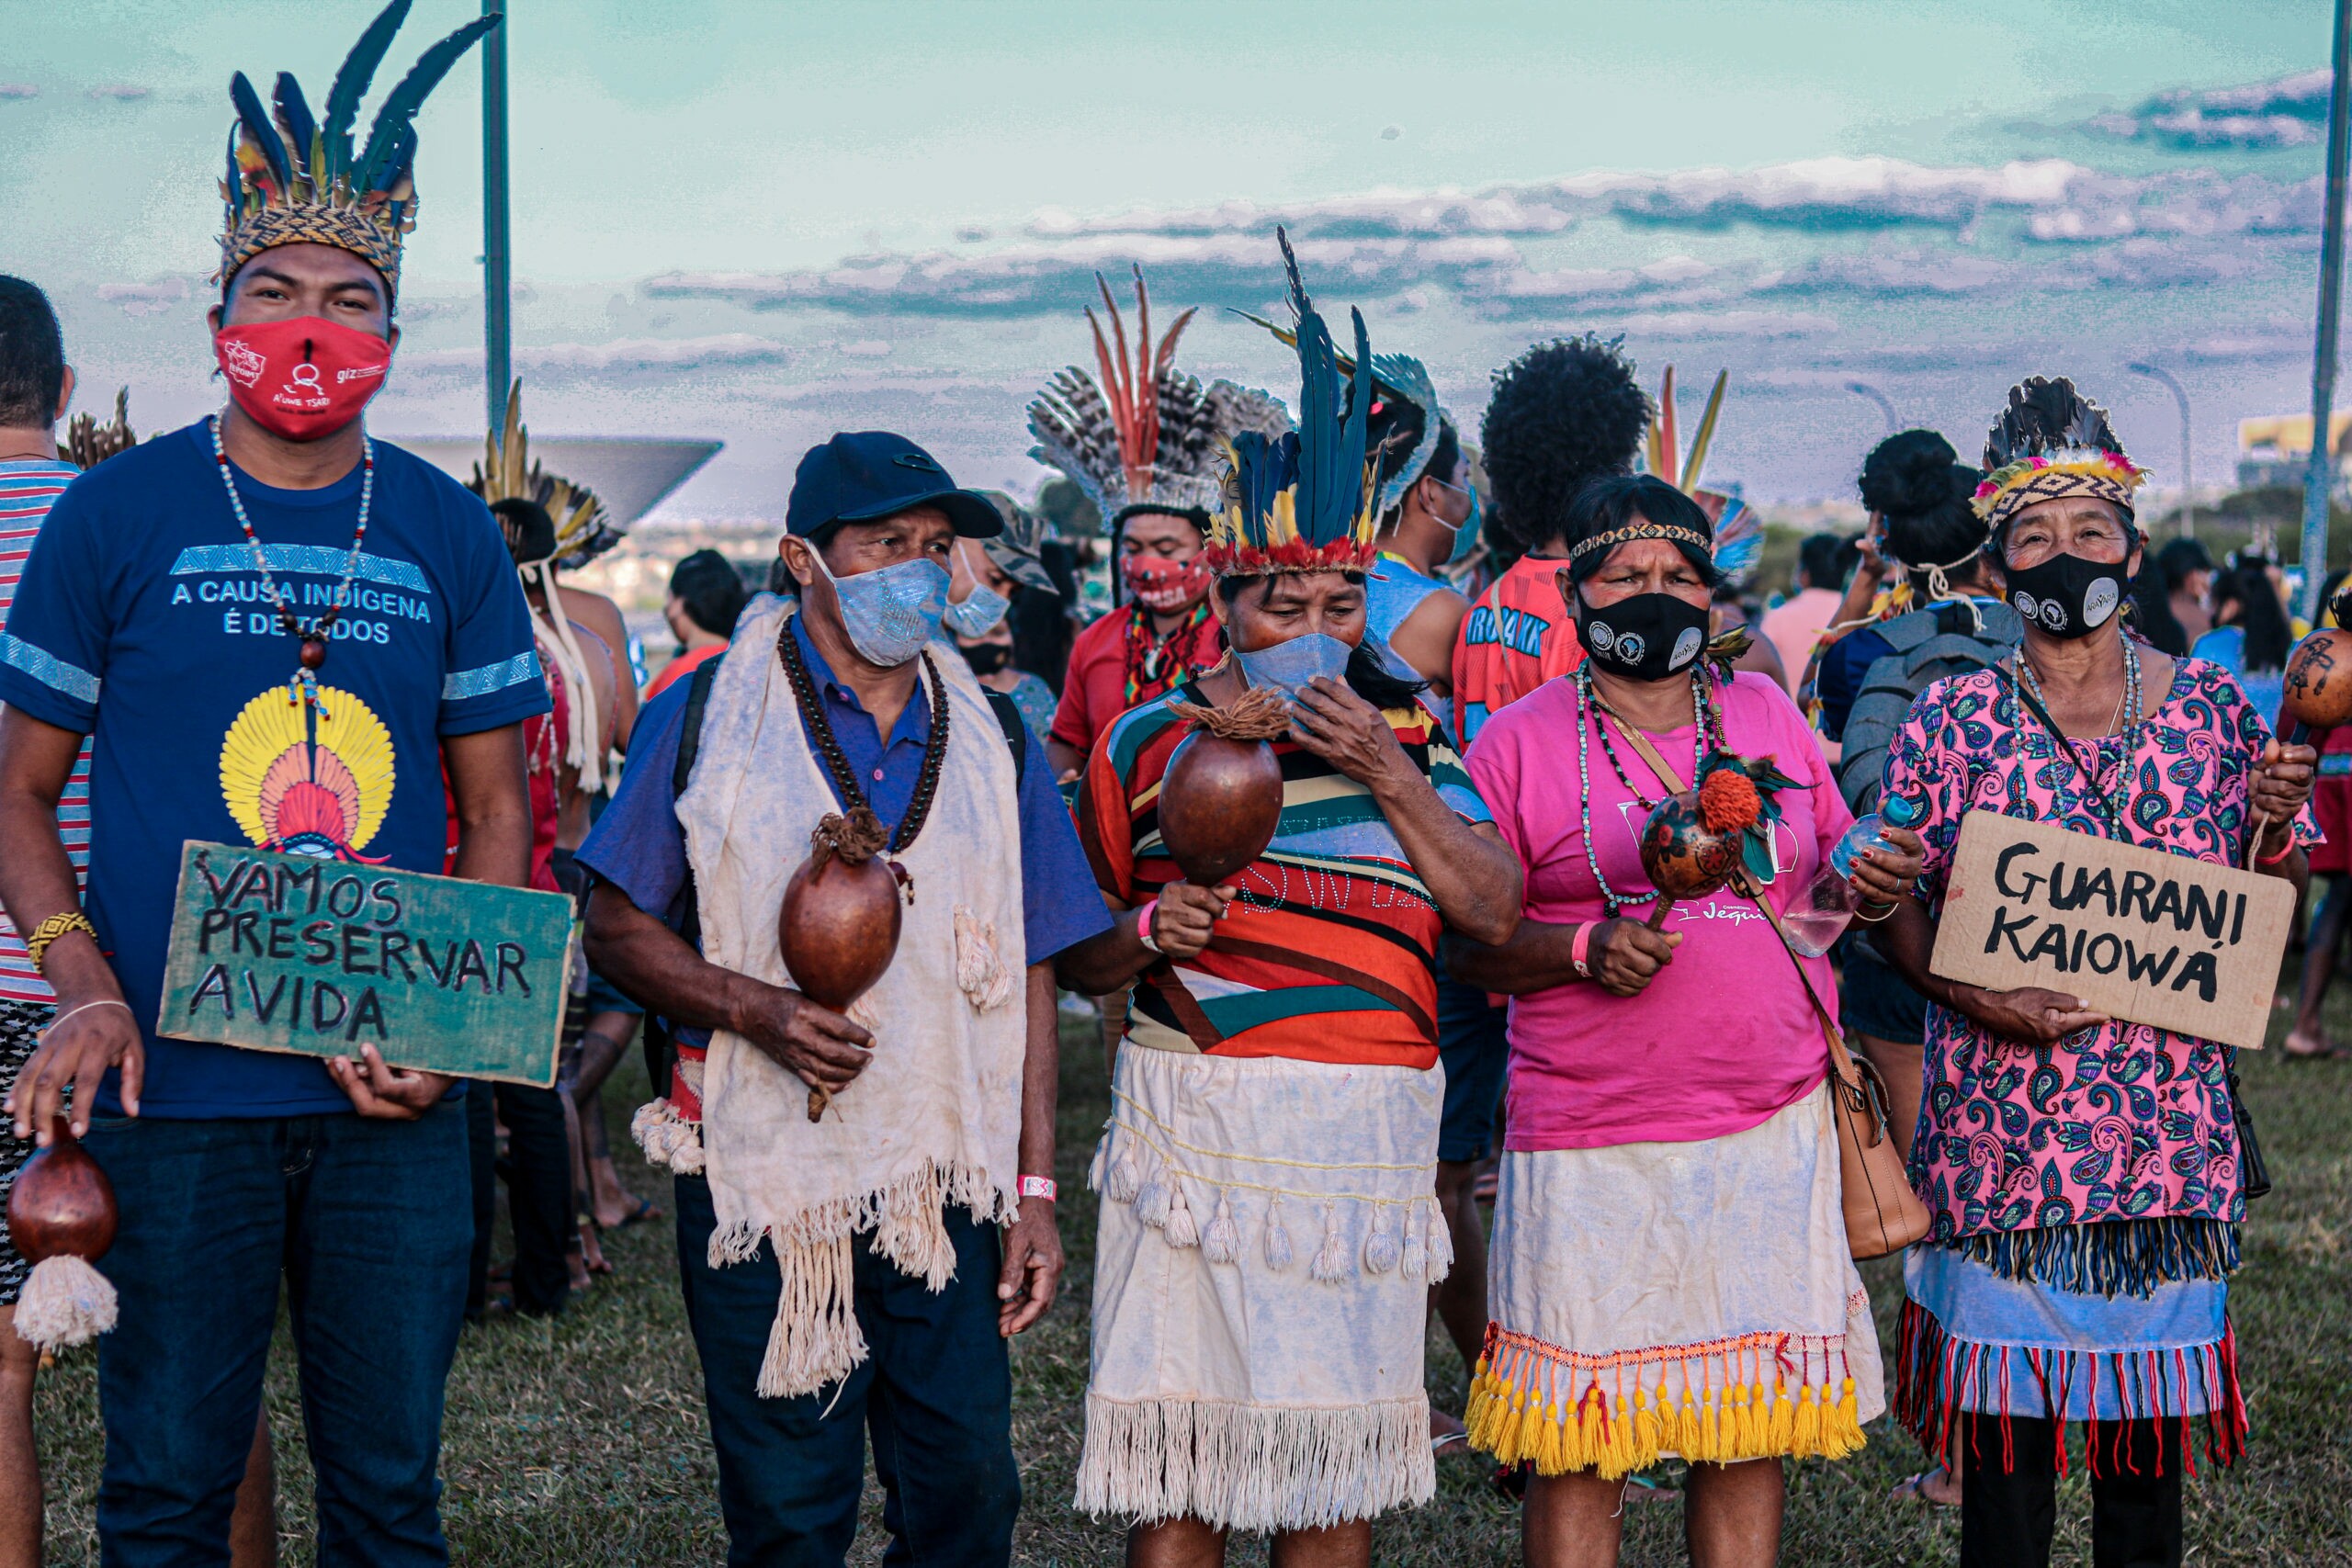 Indígenas vestidos com adereços tradicionais carregam placas com os dizeres "vamos conservar a vida" e "guarani kaiowa"